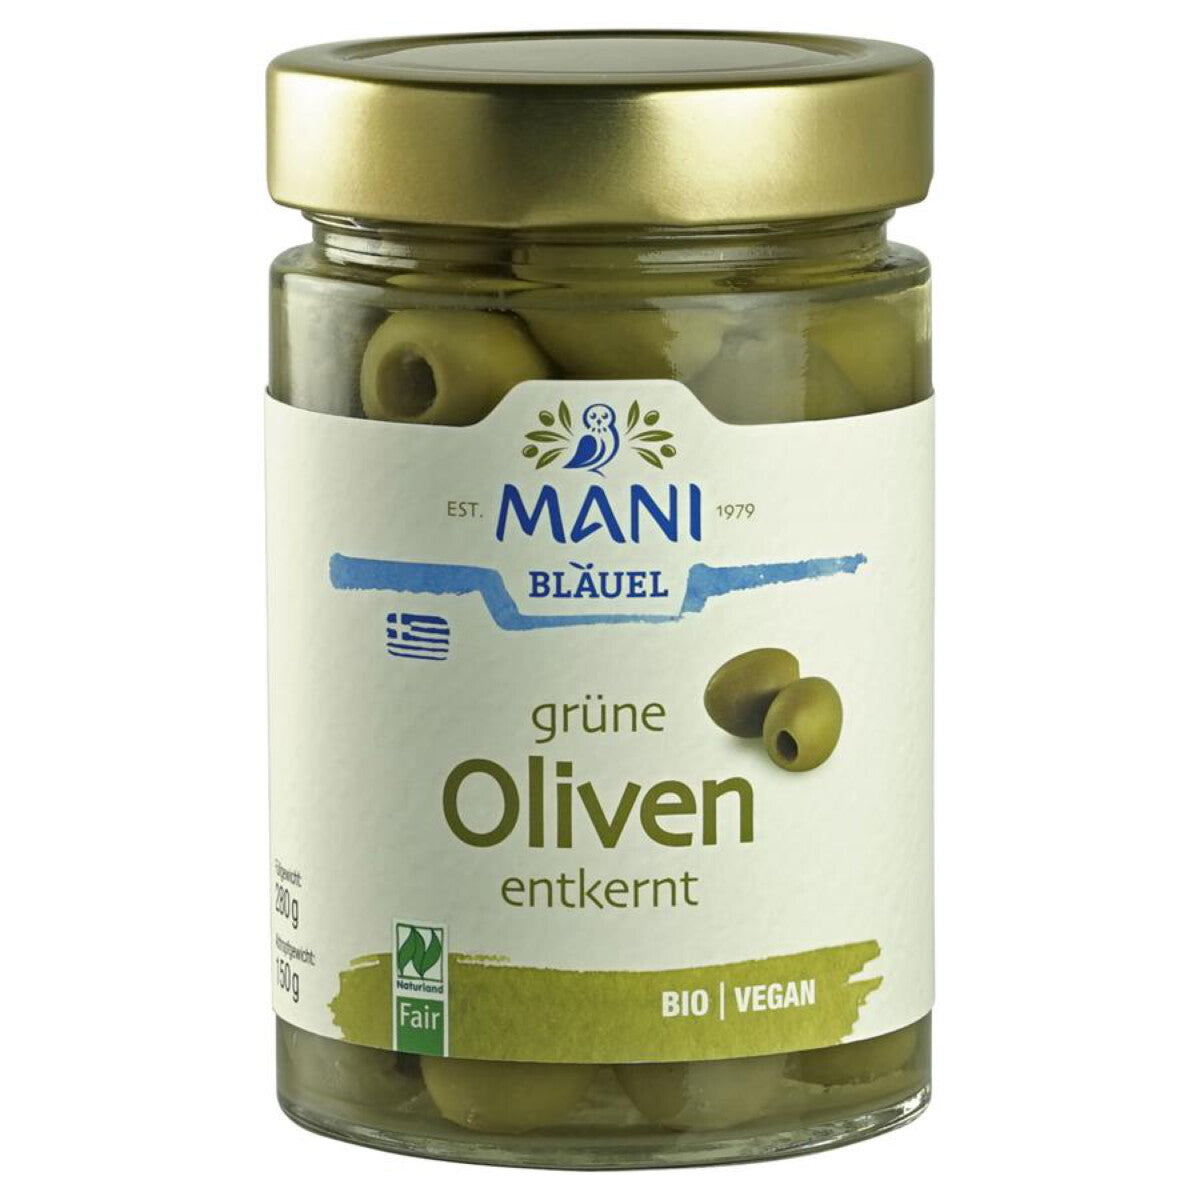 MANI BLÄUEL Grüne Oliven in Lake entkernt - 280 g